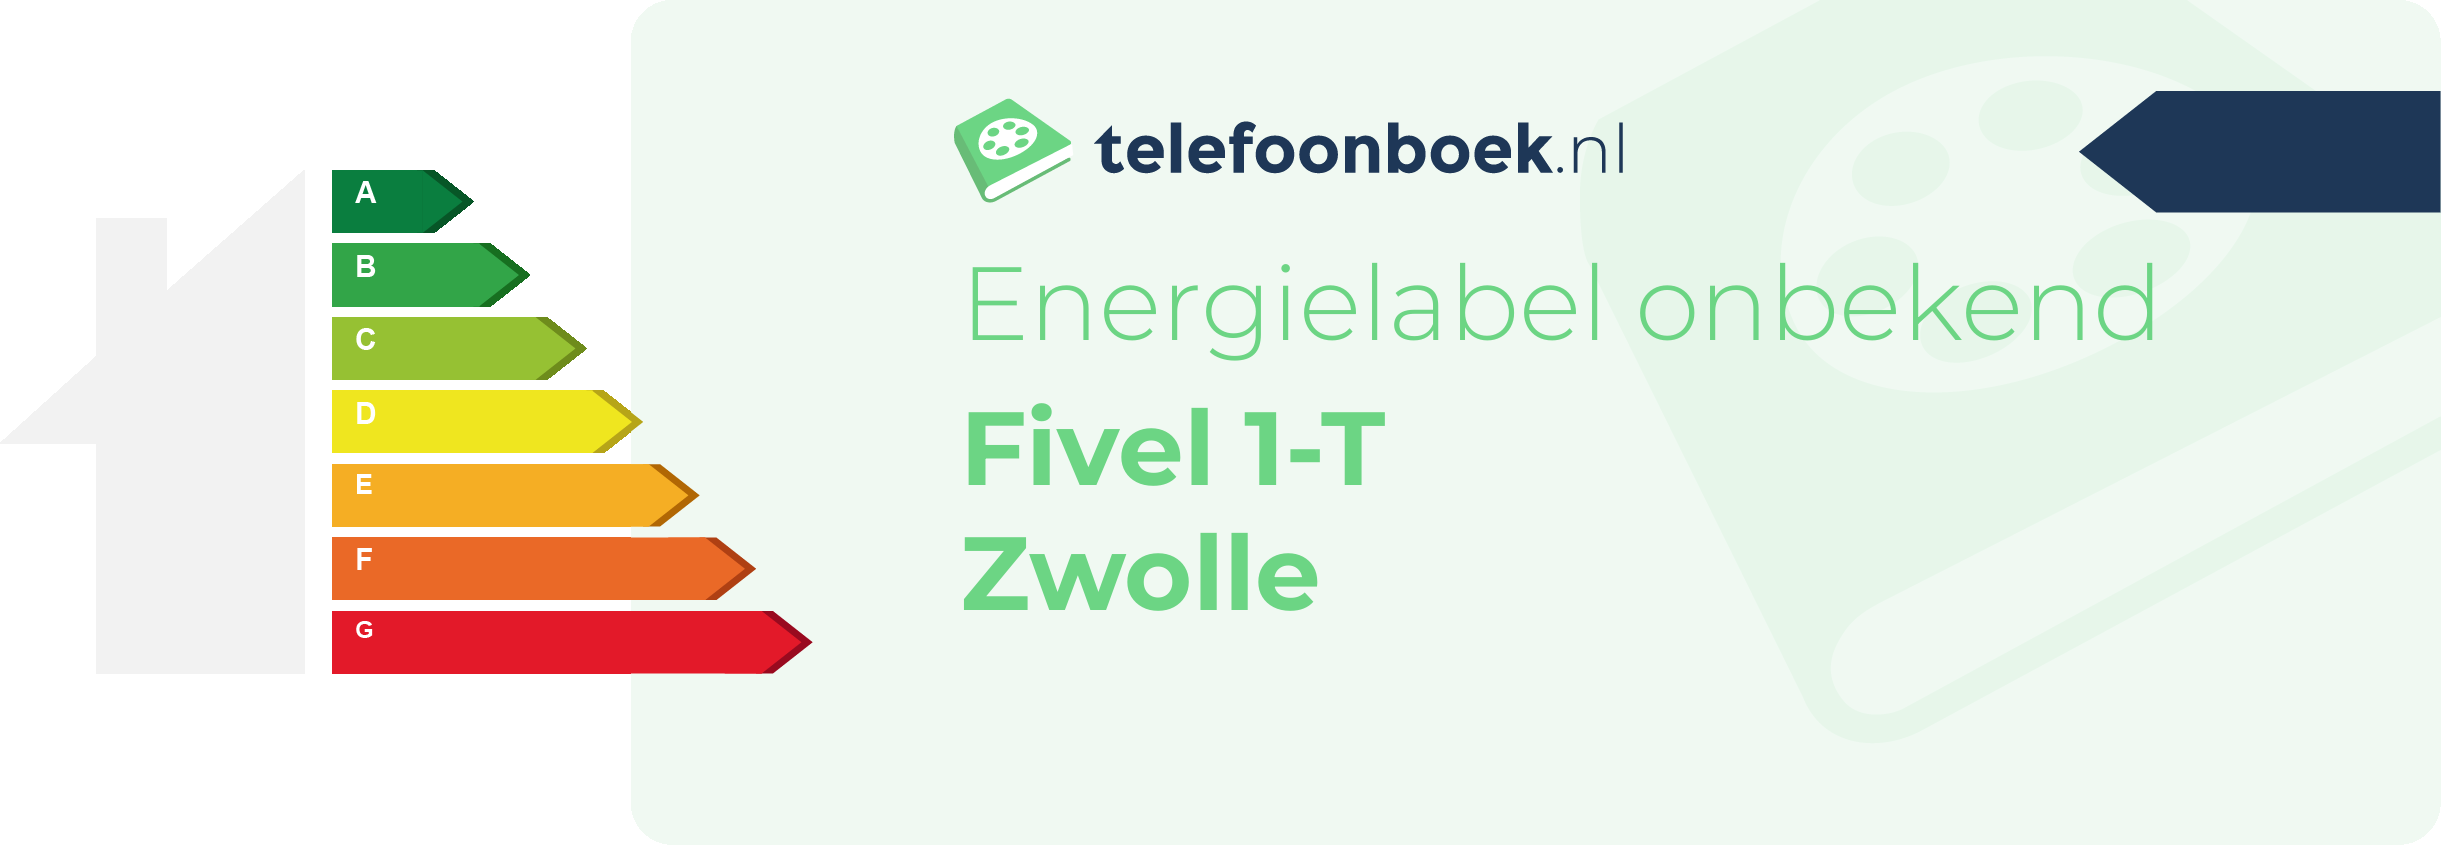 Energielabel Fivel 1-T Zwolle